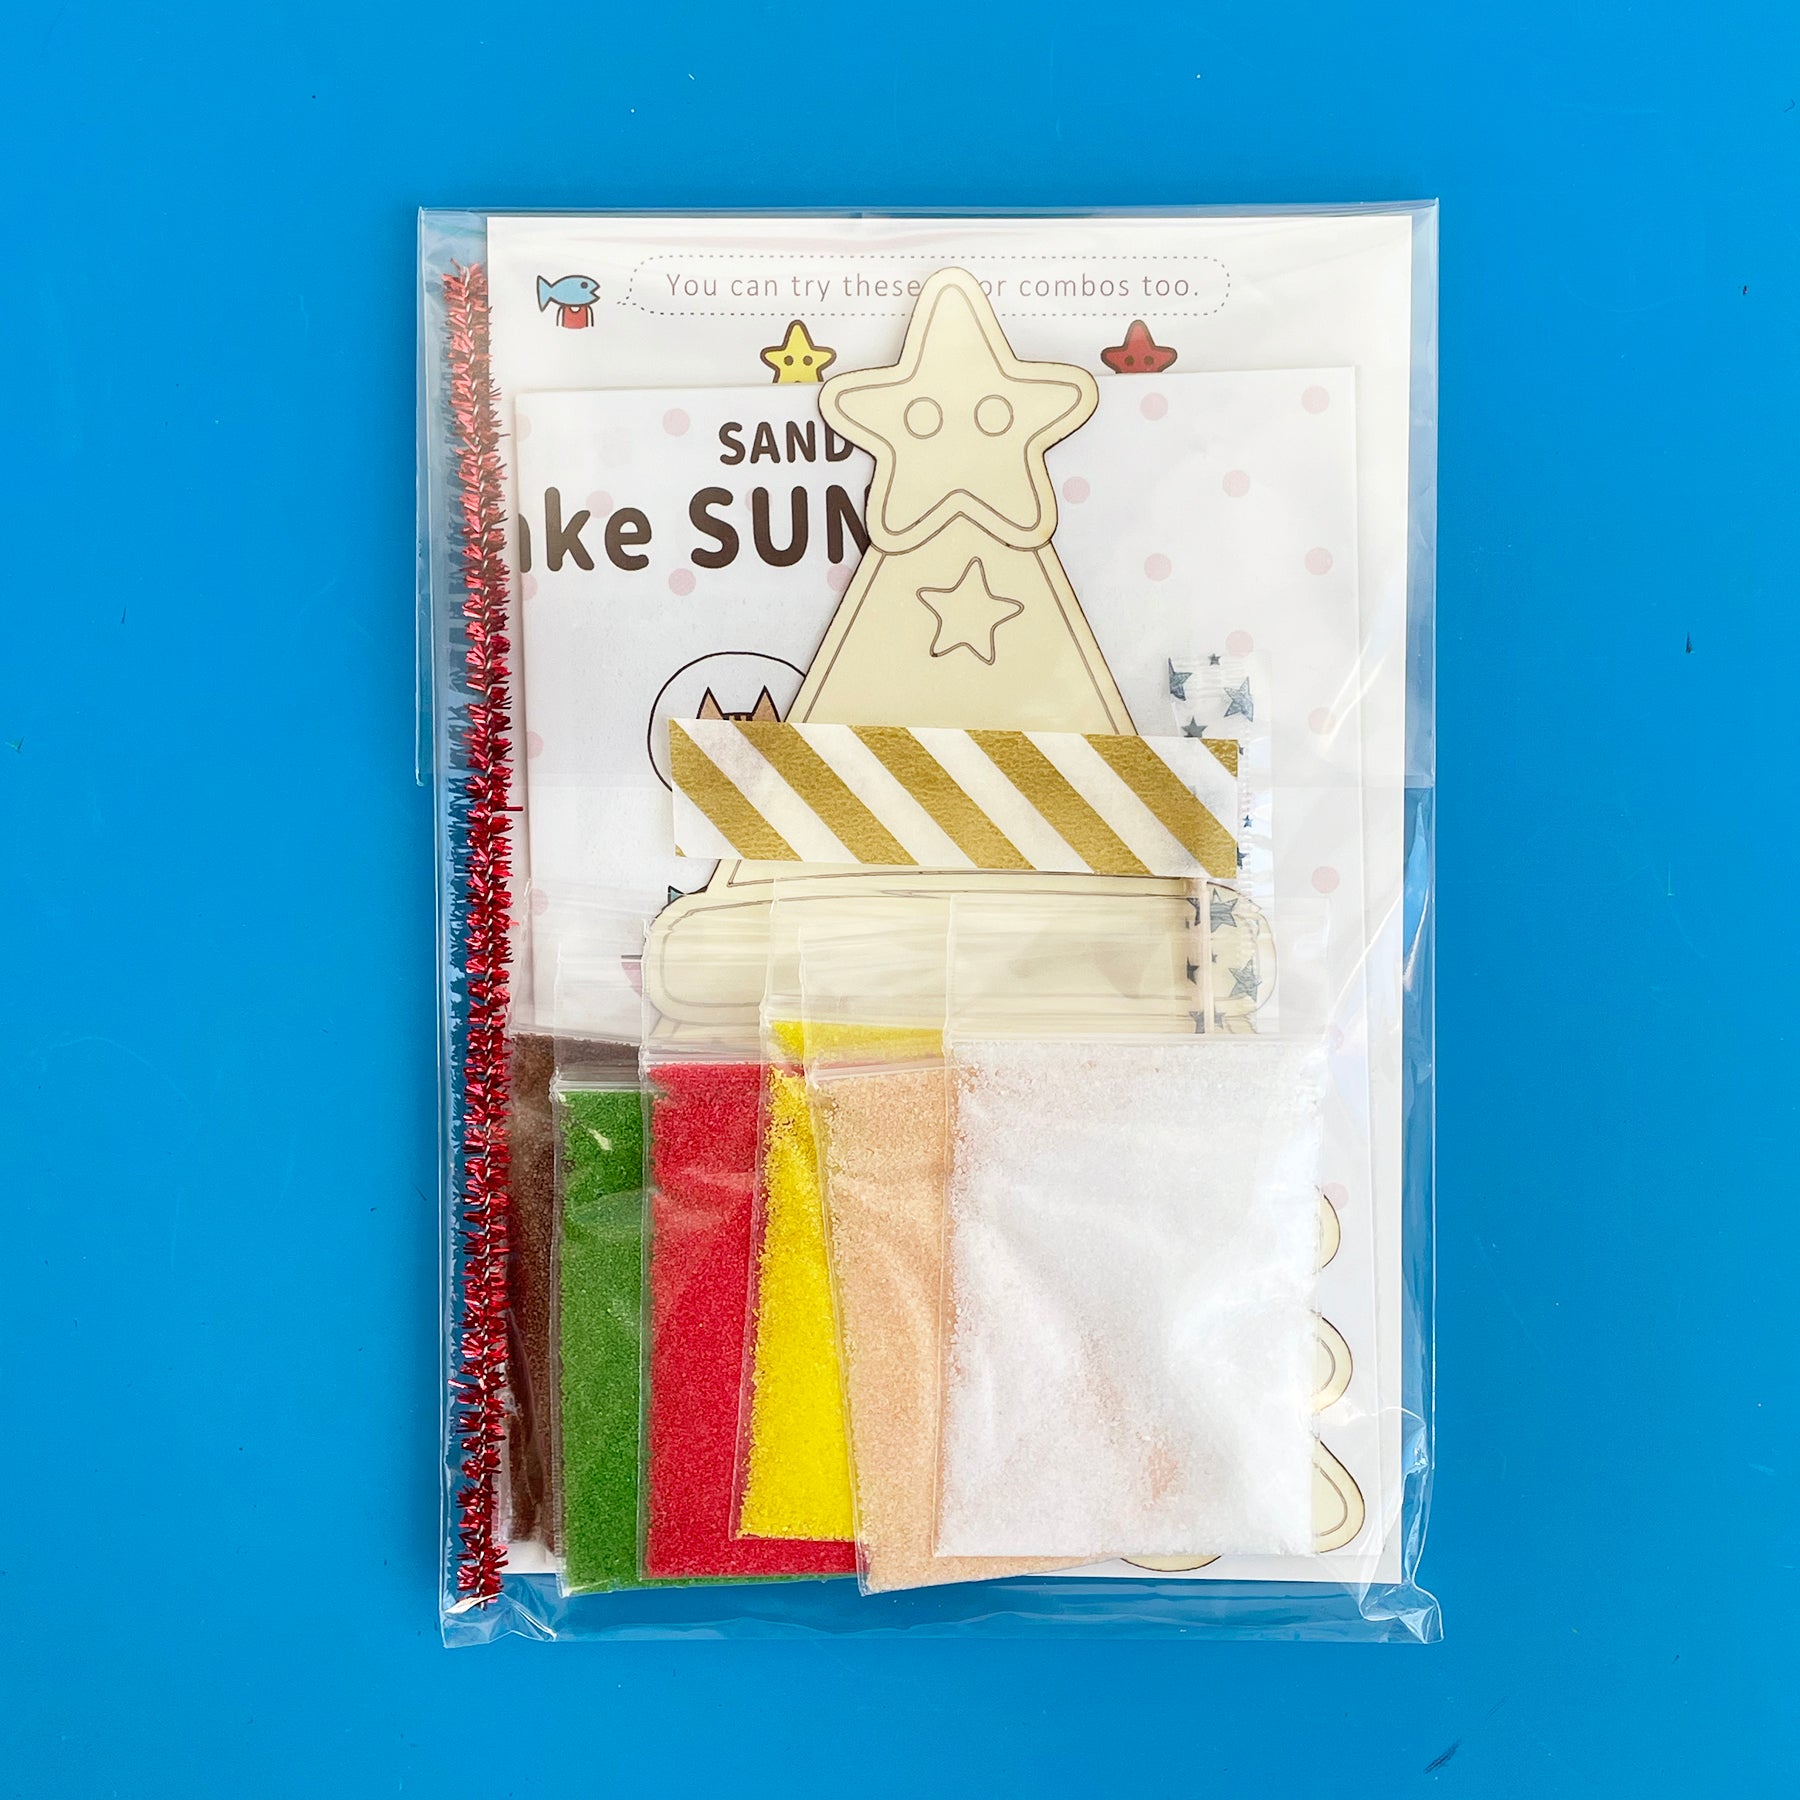 Sunrise Boy Sunae Sand Art Kit – Fair Play Projects